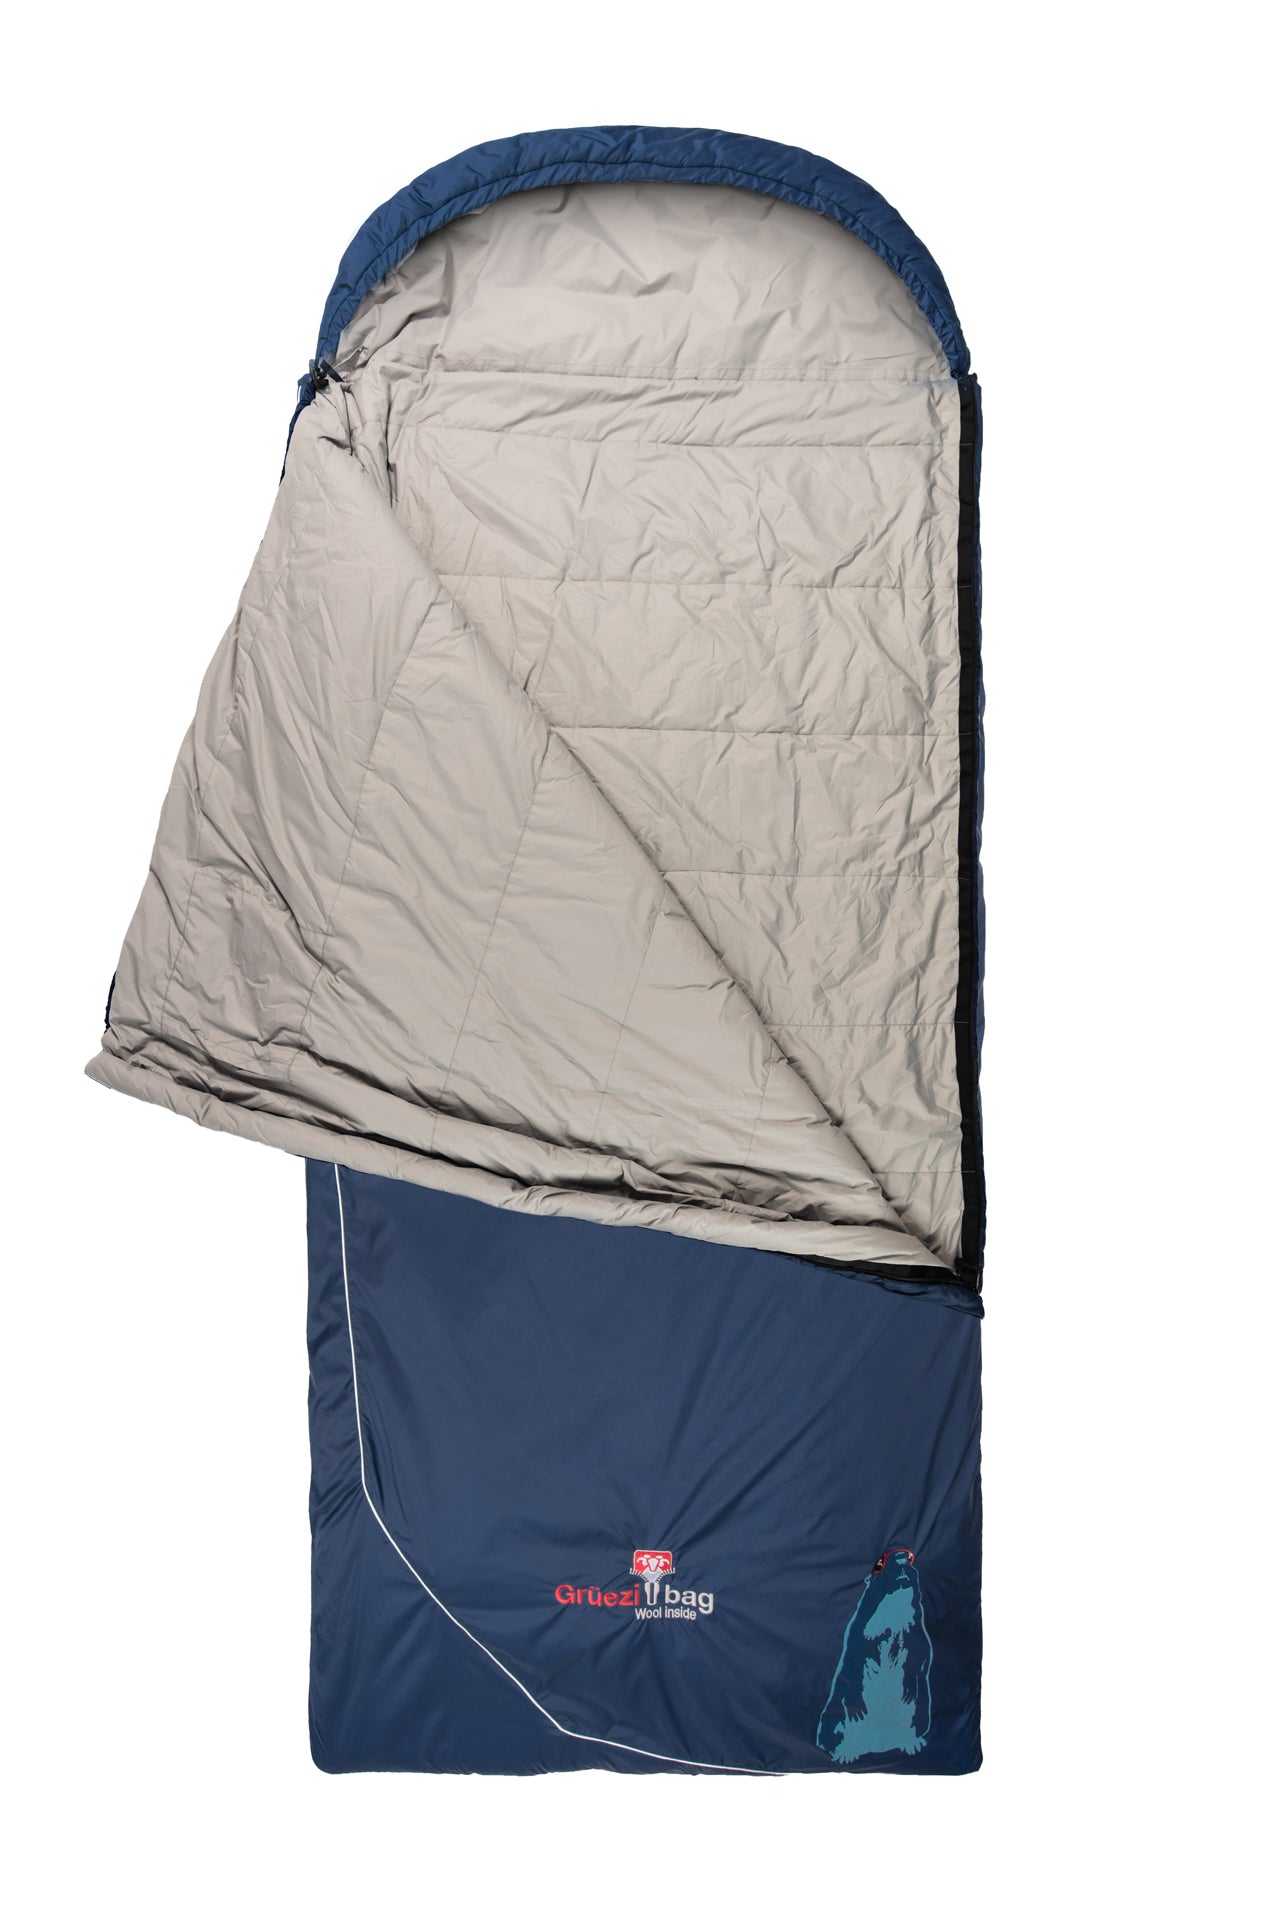 Grüezi bag Campingschlafsack Biopod Wolle Murmeltier Comfort XXL - aufgeschlagen